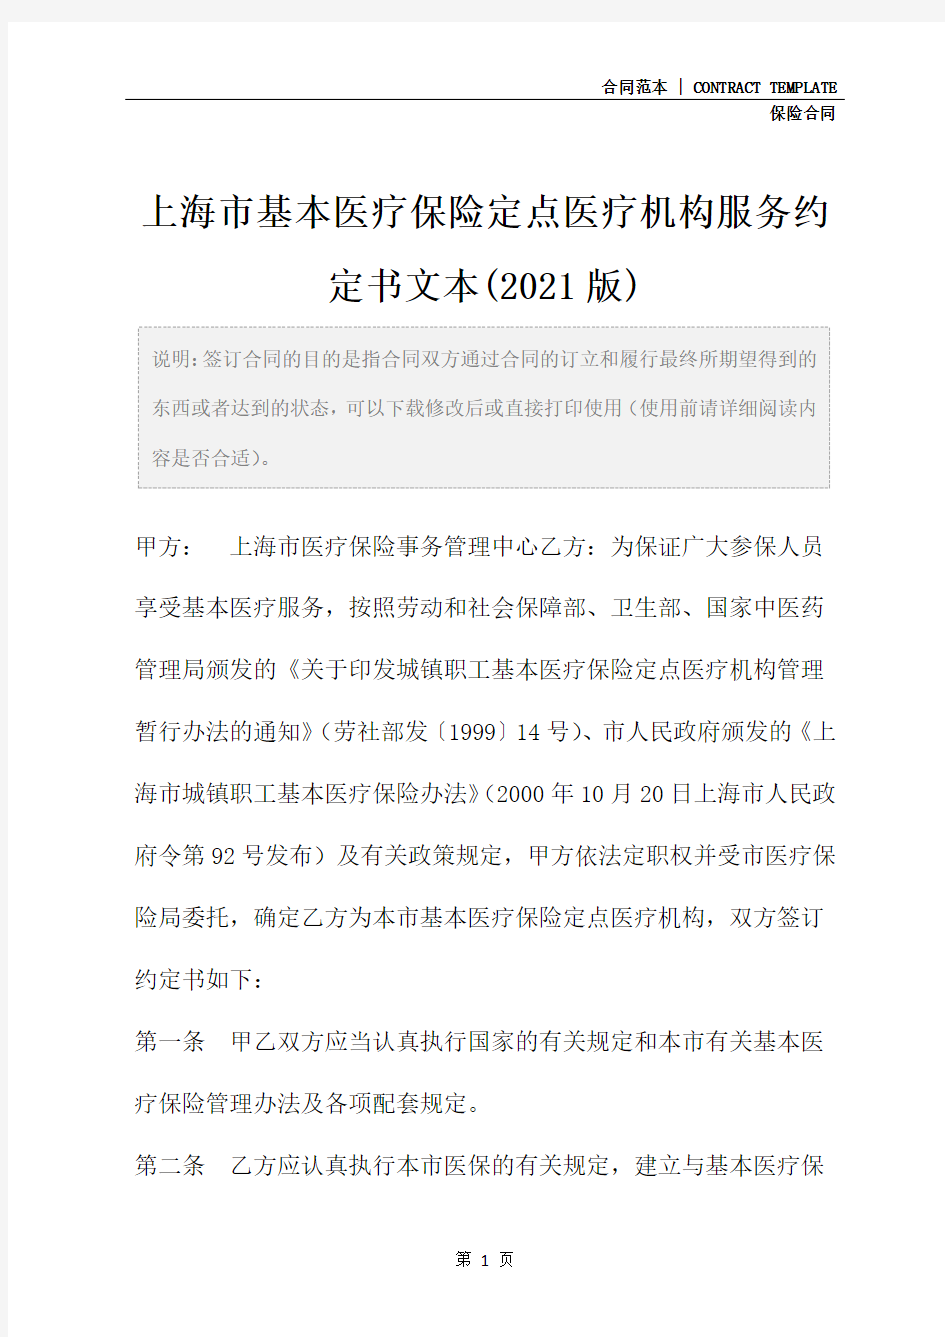 上海市基本医疗保险定点医疗机构服务约定书文本(2021版)